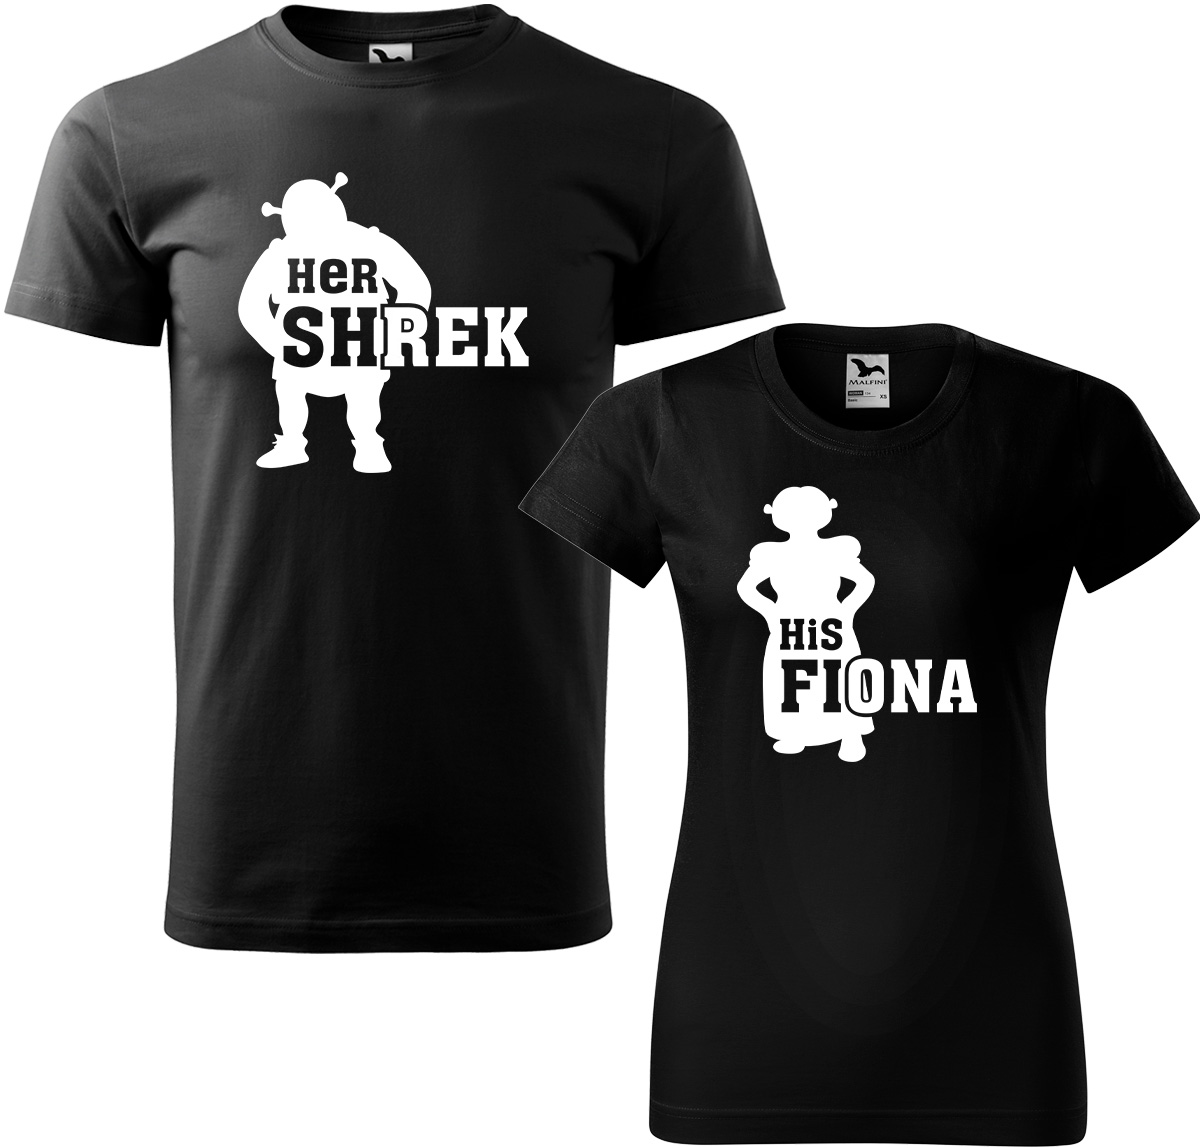 Trička pro páry - Shrek a Fiona Barva: Černá (01), Velikost dámské tričko: S, Velikost pánské tričko: M